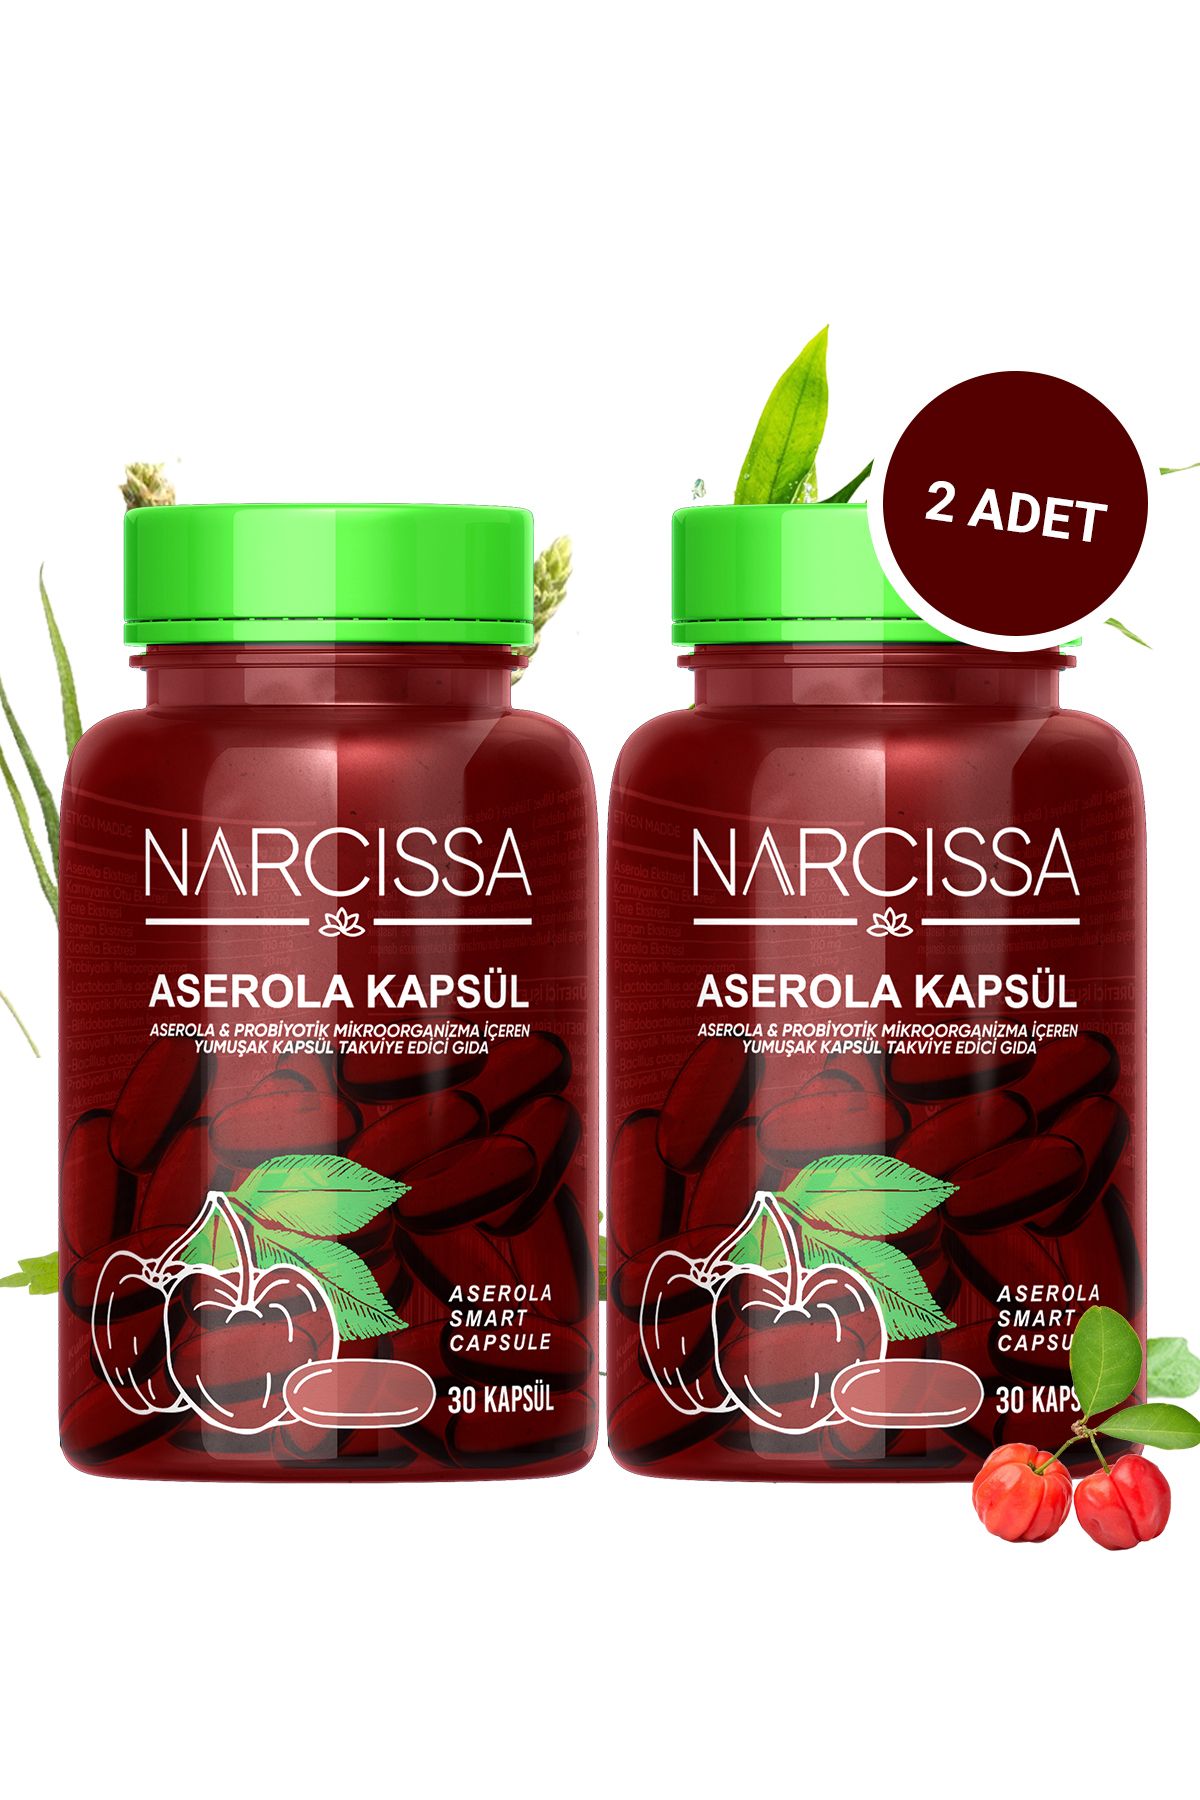 Narcissa 2 Adet- Aserola Kapsulü & Probiyotik Mikroorganizma İçeren Detox Kapsülü